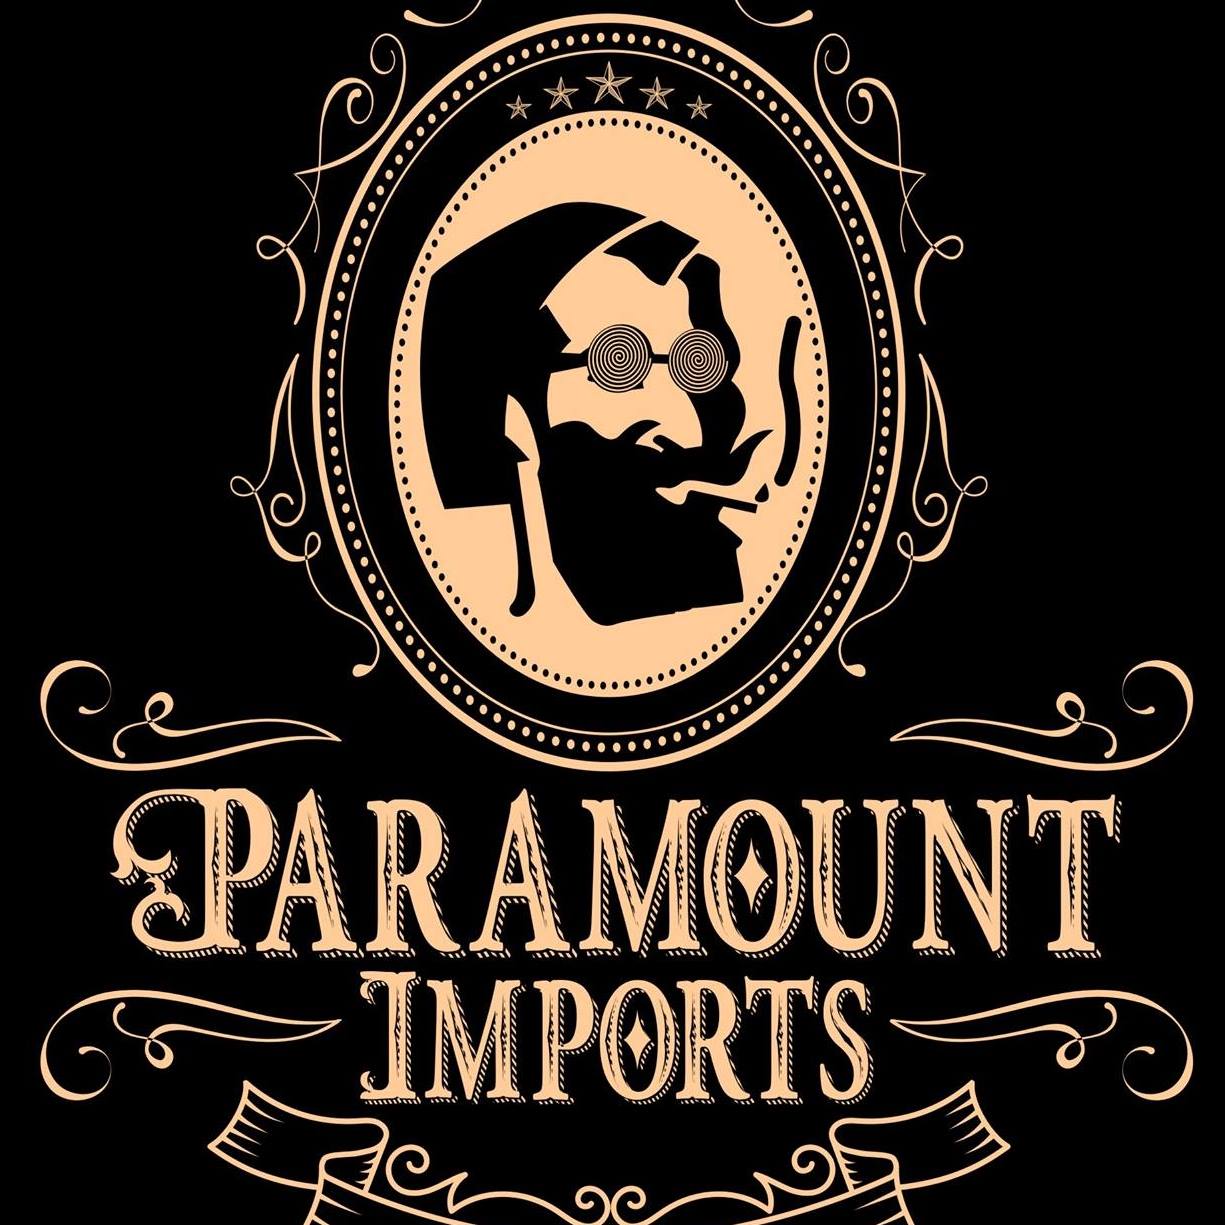 Company logo of Paramount Imports